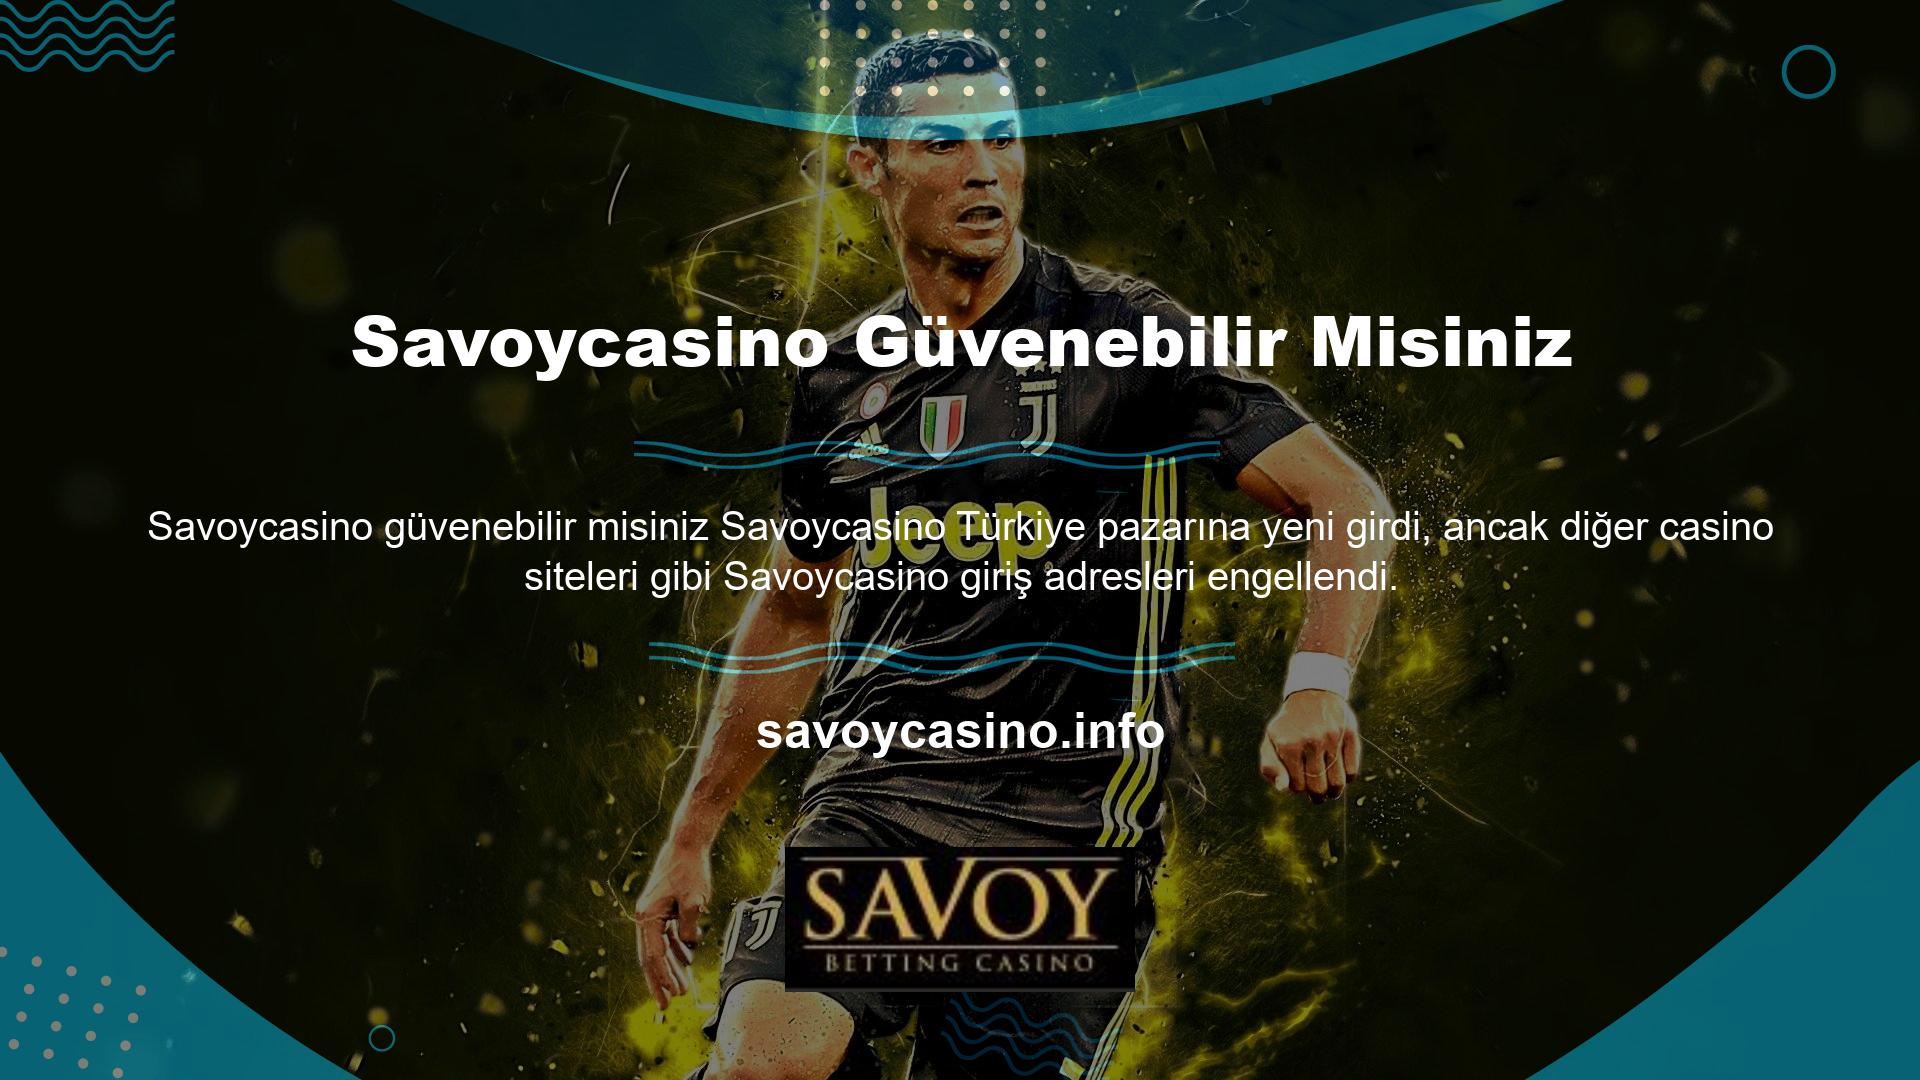 Mevcut Savoycasino giriş adresiniz anında güncellenecek ve yeni Savoycasino giriş adresiniz size çeşitli kanallardan anında iletilecektir